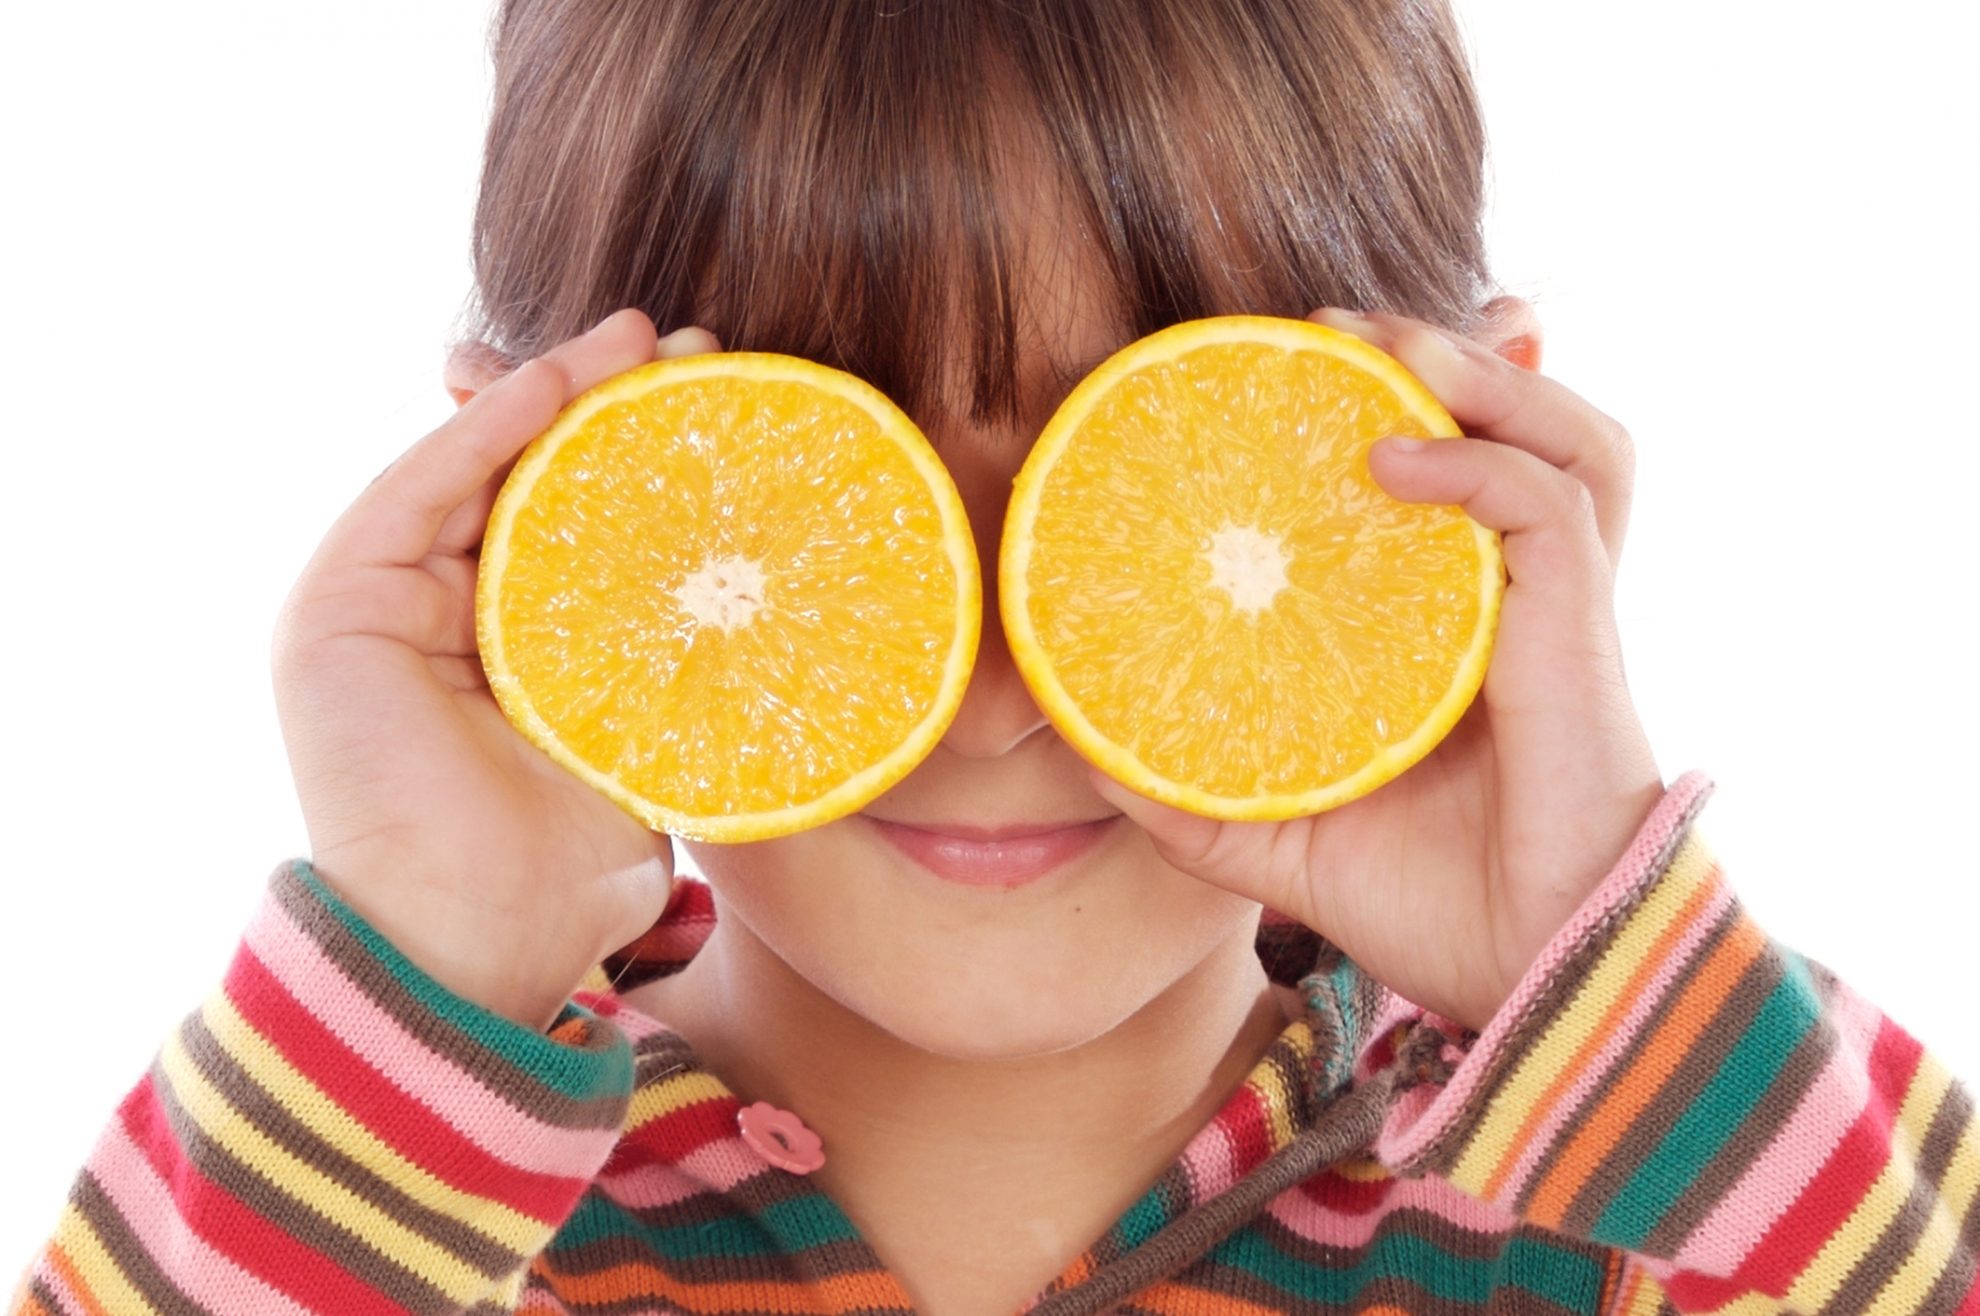 Nors apelsinų galima rasti daugumos lietuvių namuose, kai kurios naudingosios šio įprasto vaisiaus savybės tikrai stebina.